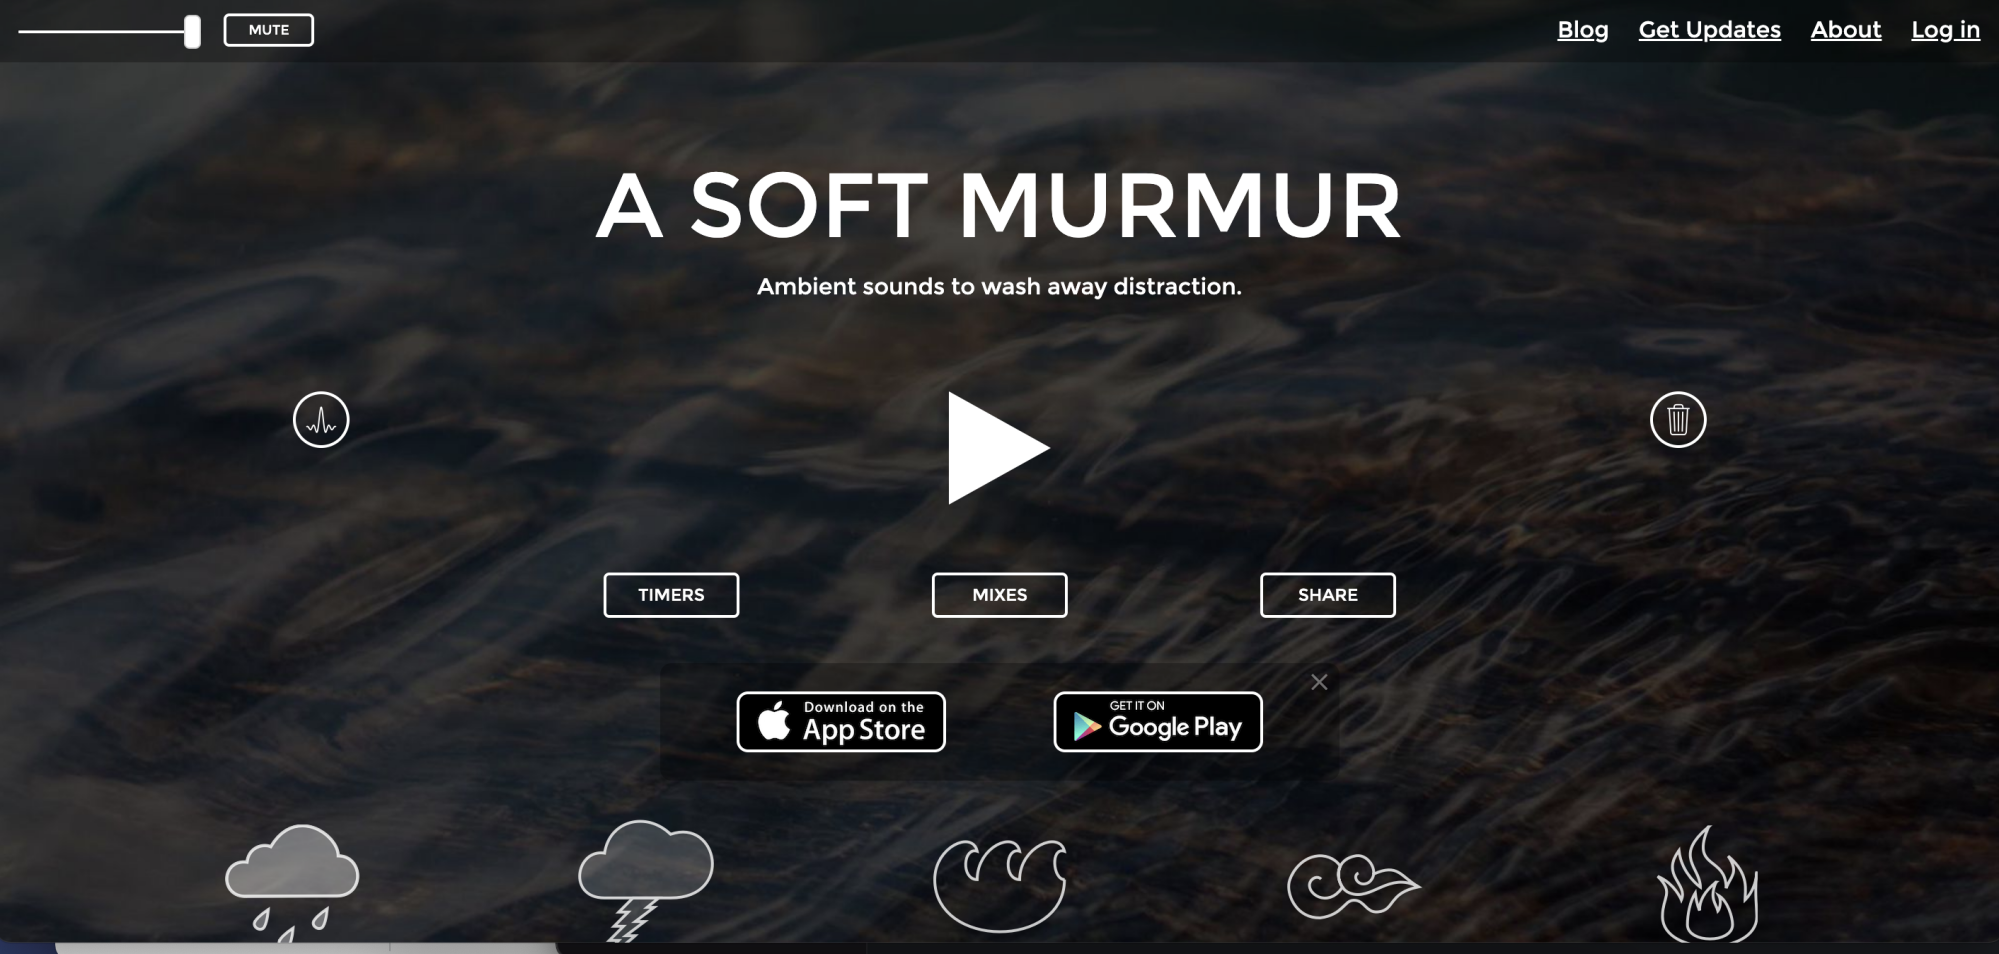 Une capture d'écran du site A Soft Murmur